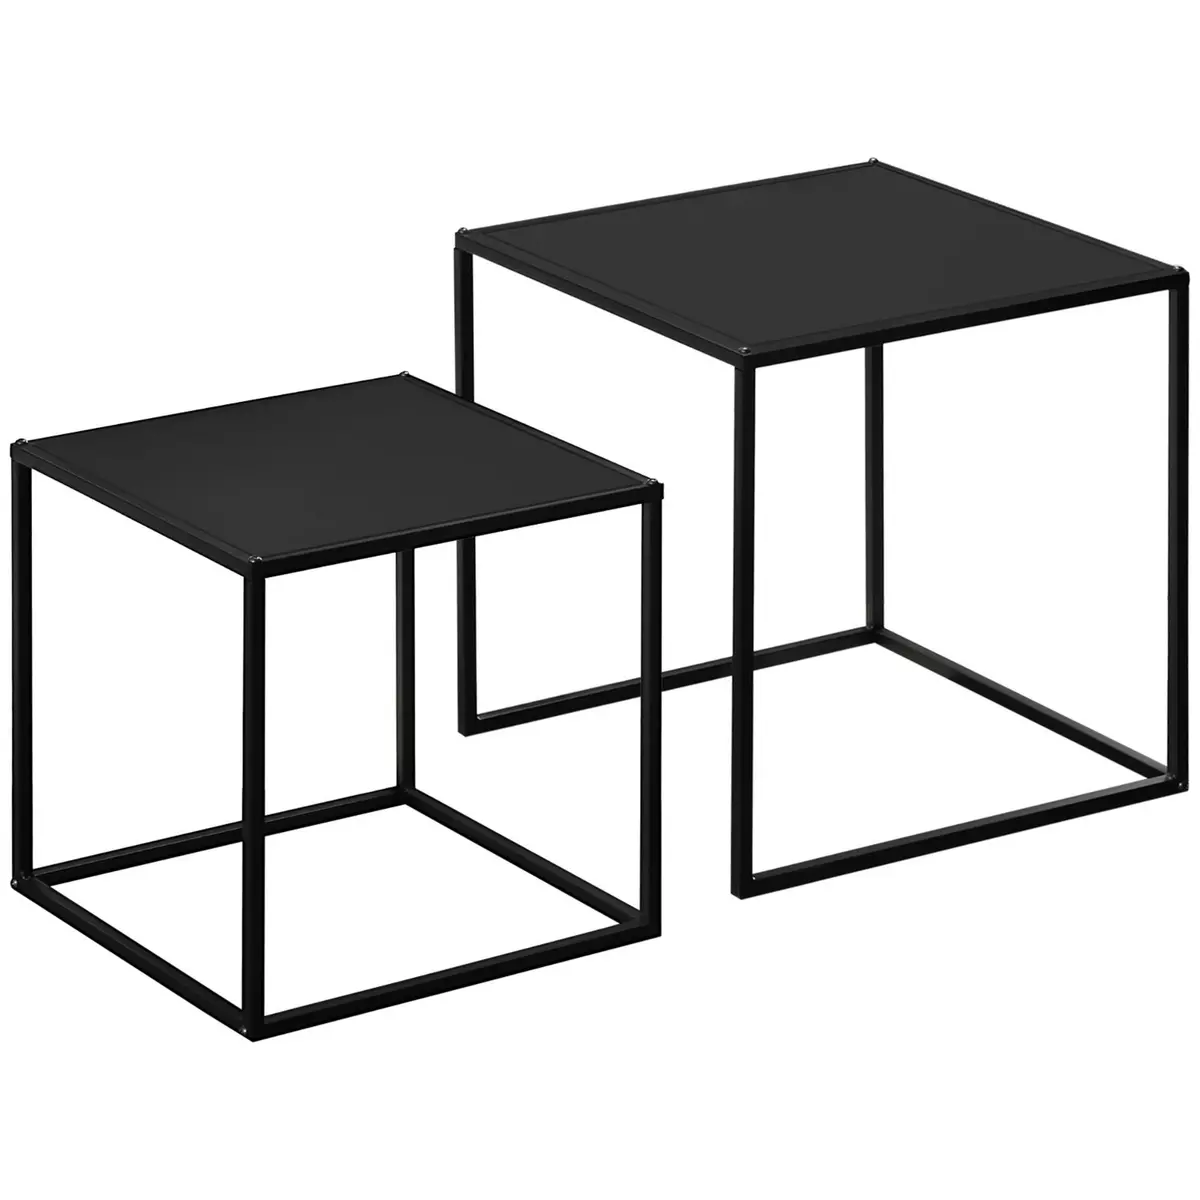 HOMCOM Lot de 2 tables basses gigognes carrées design contemporain encastrable acier noir